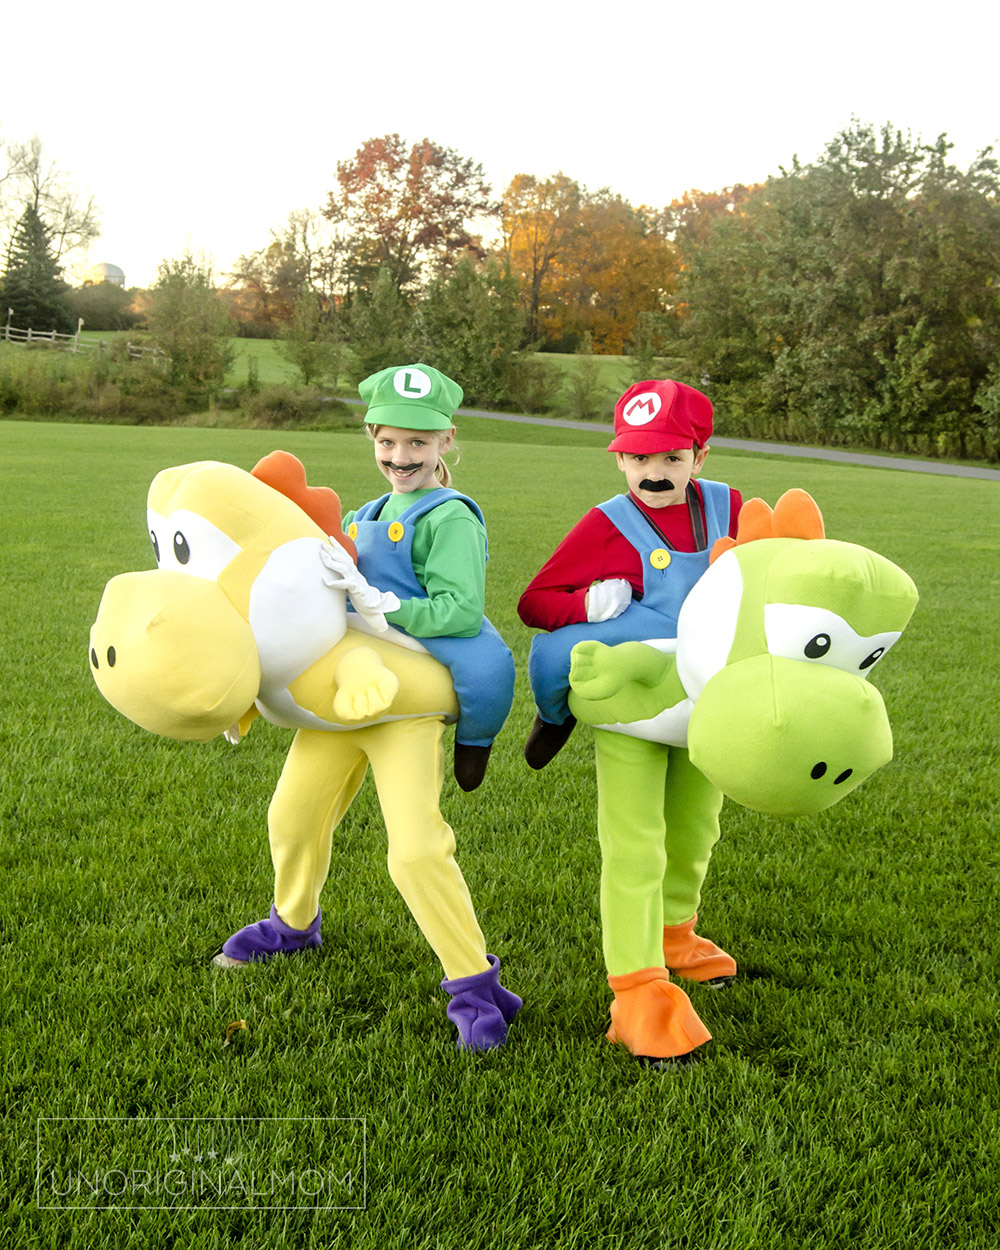 Fantasia Mario e Luigi Como fazer, passo a passo